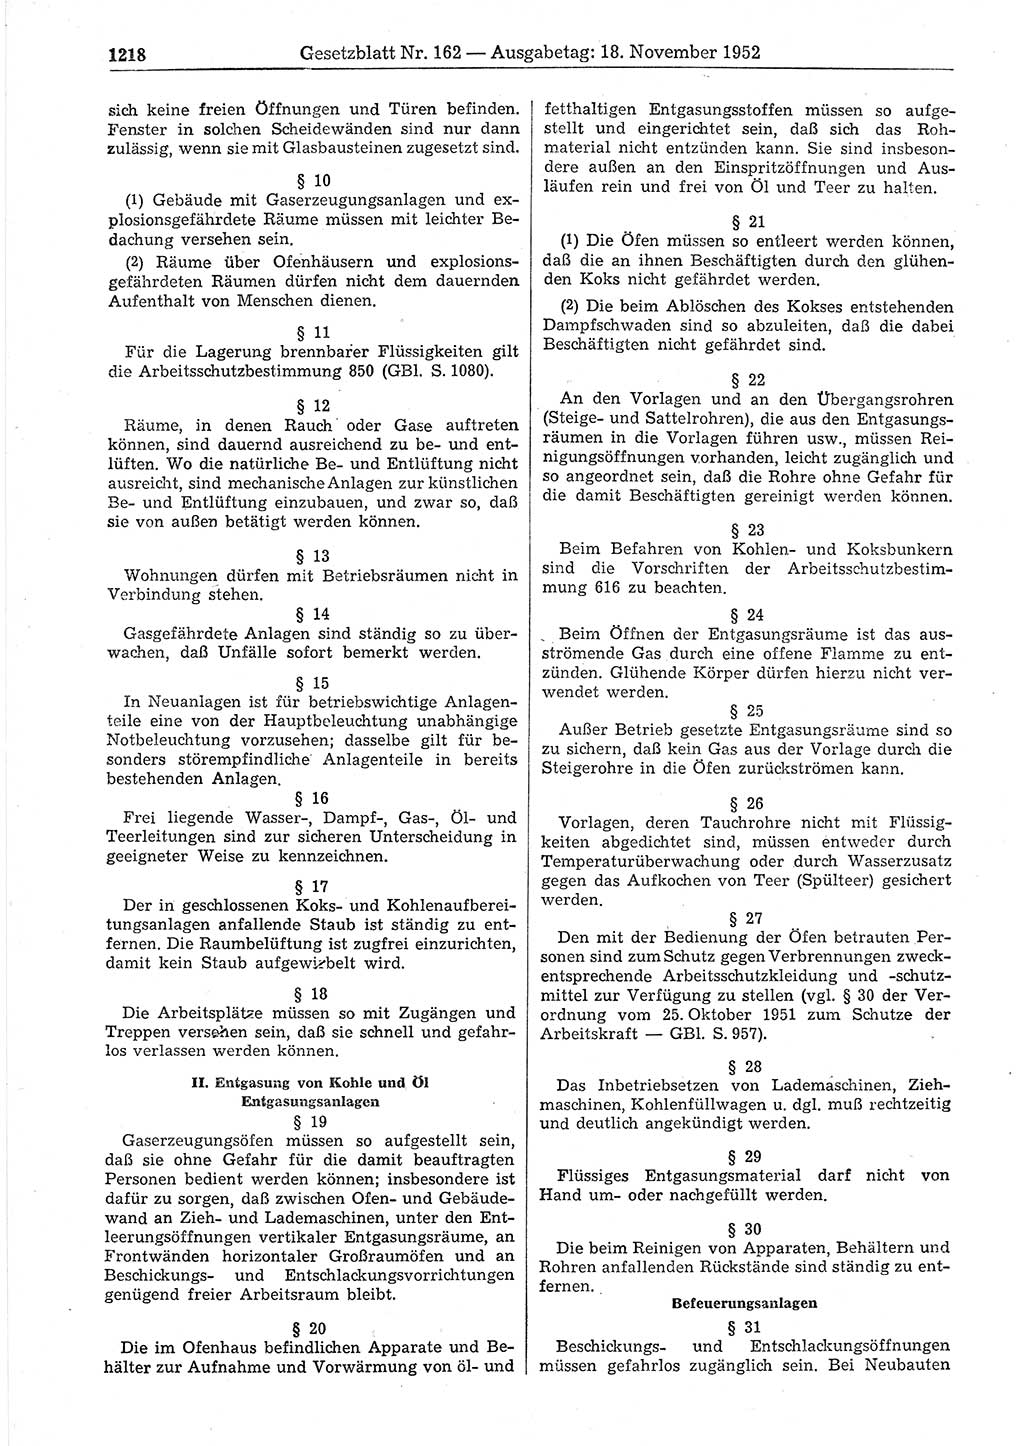 Gesetzblatt (GBl.) der Deutschen Demokratischen Republik (DDR) 1952, Seite 1218 (GBl. DDR 1952, S. 1218)